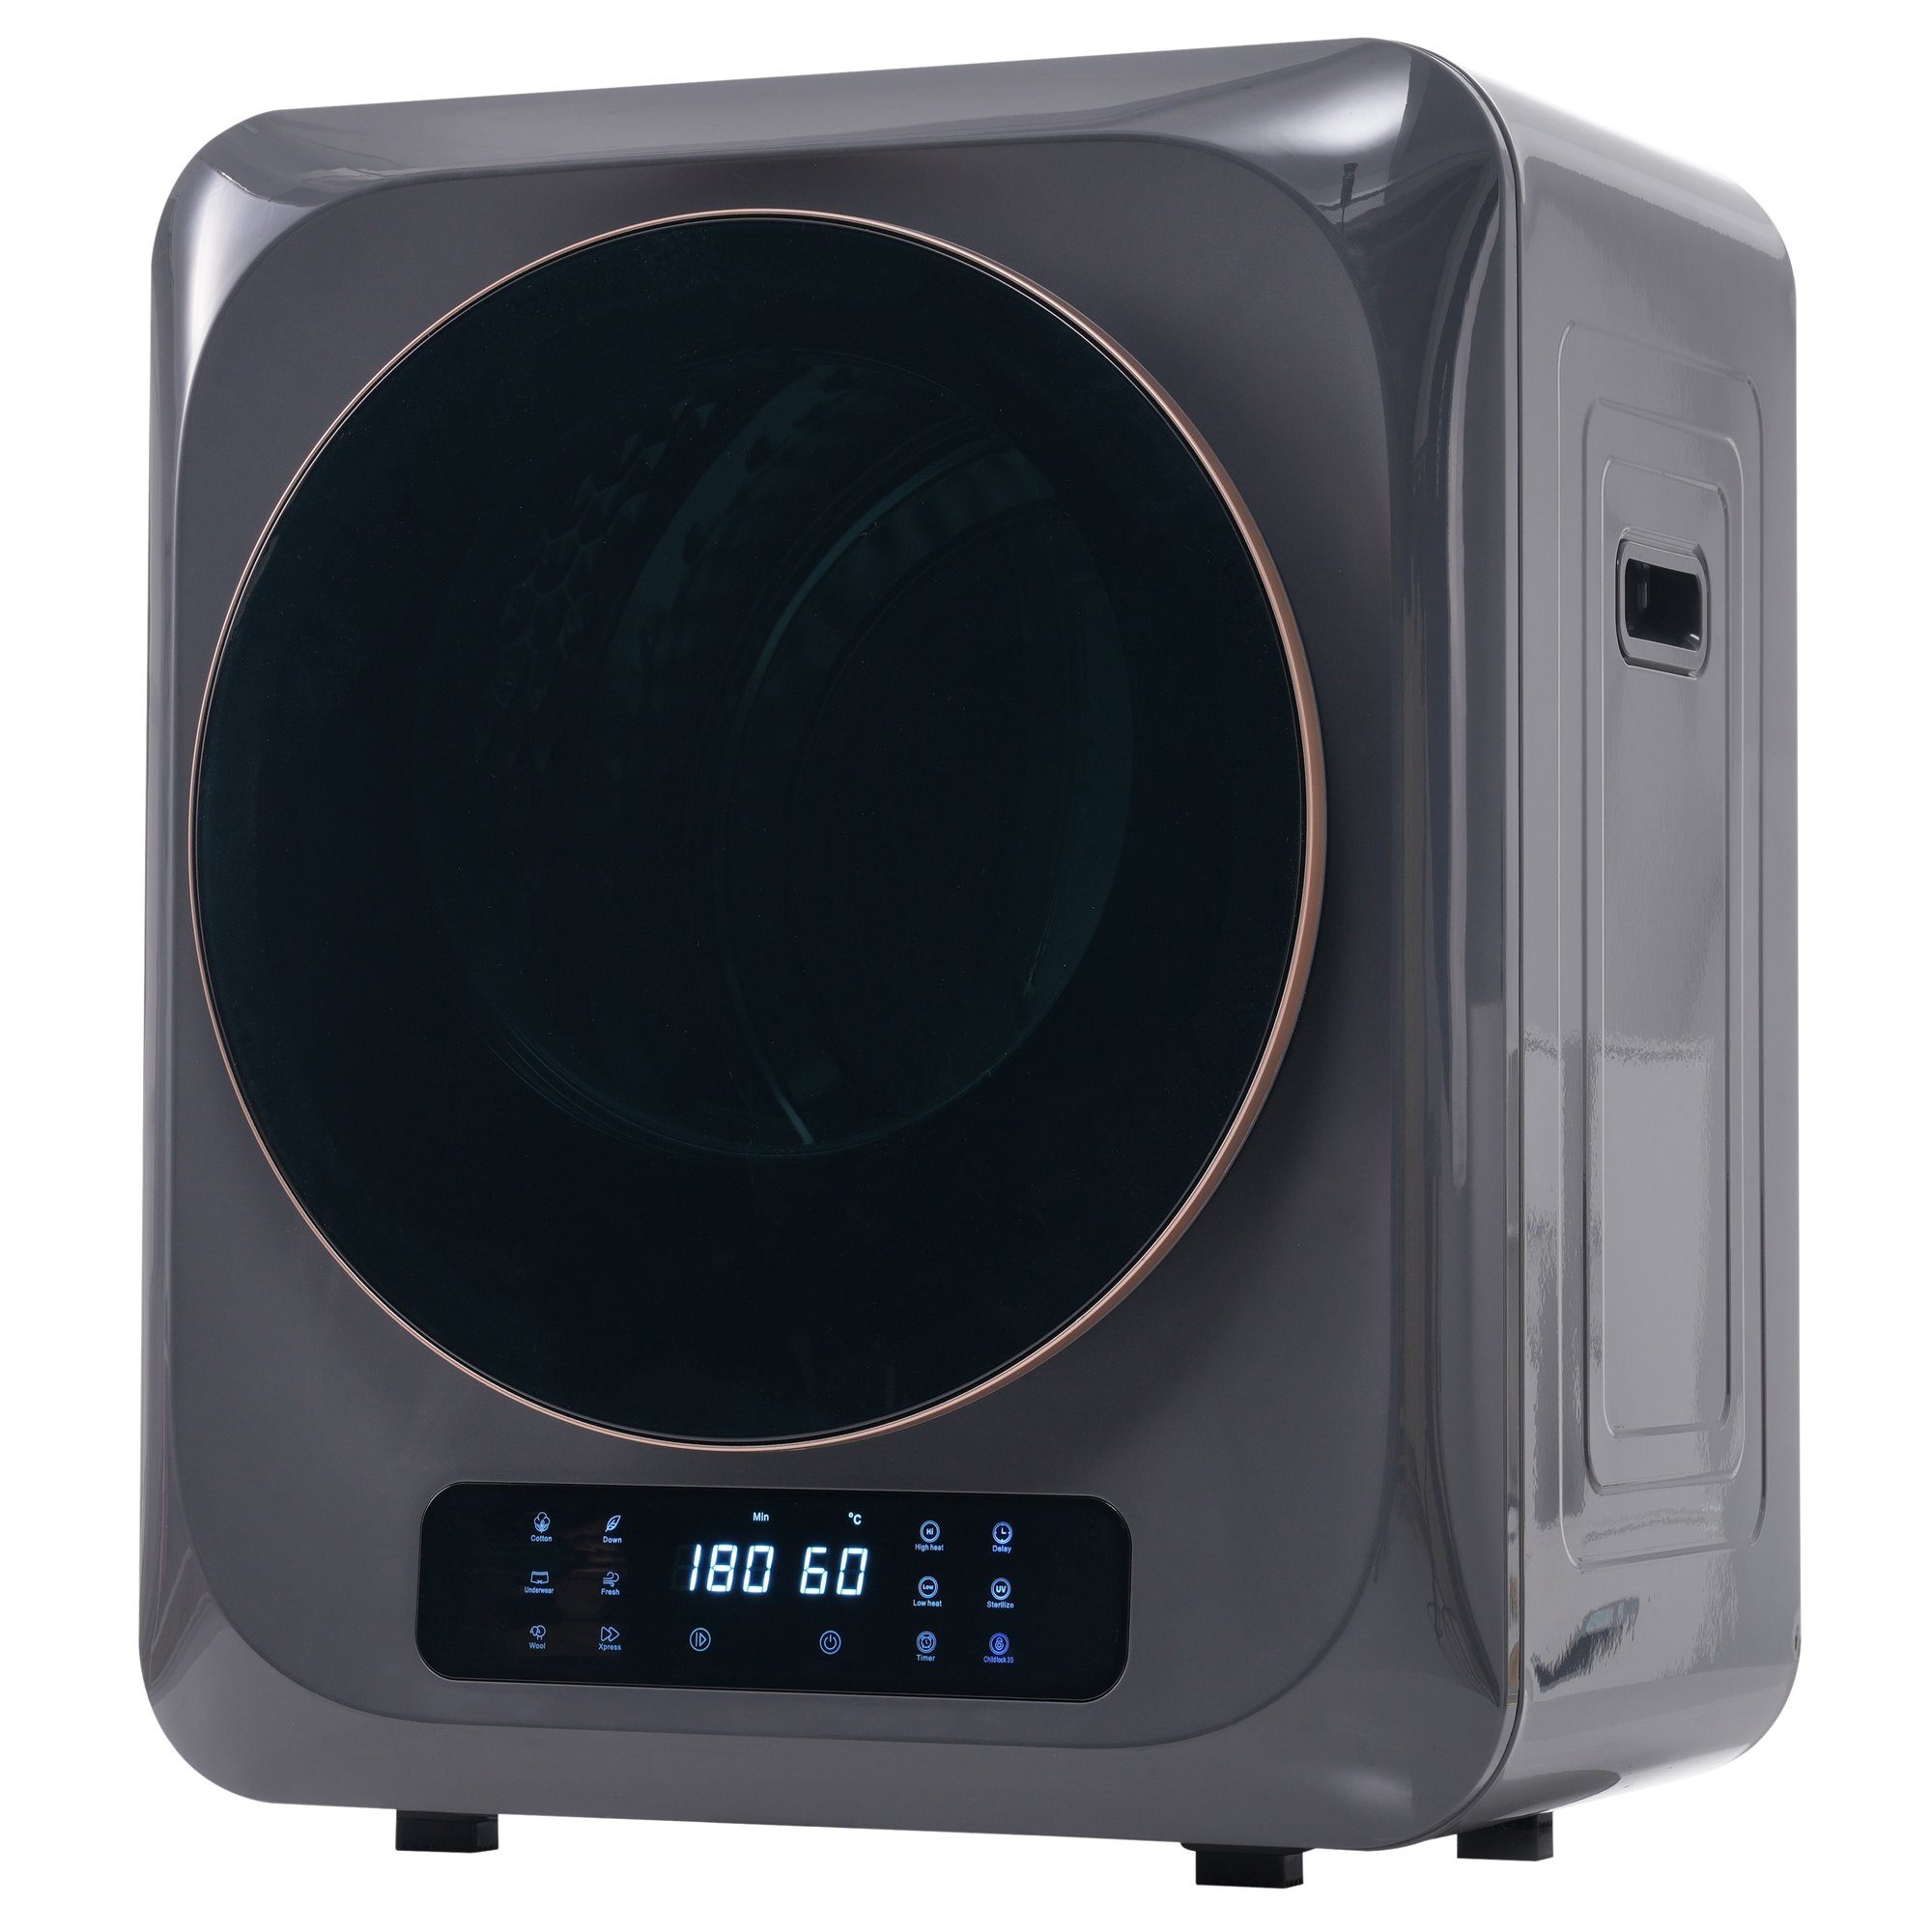 REDOM Ablufttrockner Mini-Wäschetrockner freistehend/hängend Mit UV-Sterilisation und LED-Display, 2.5 kg, Belüfteter Wäschetrockner mit Timer und 6 Programme